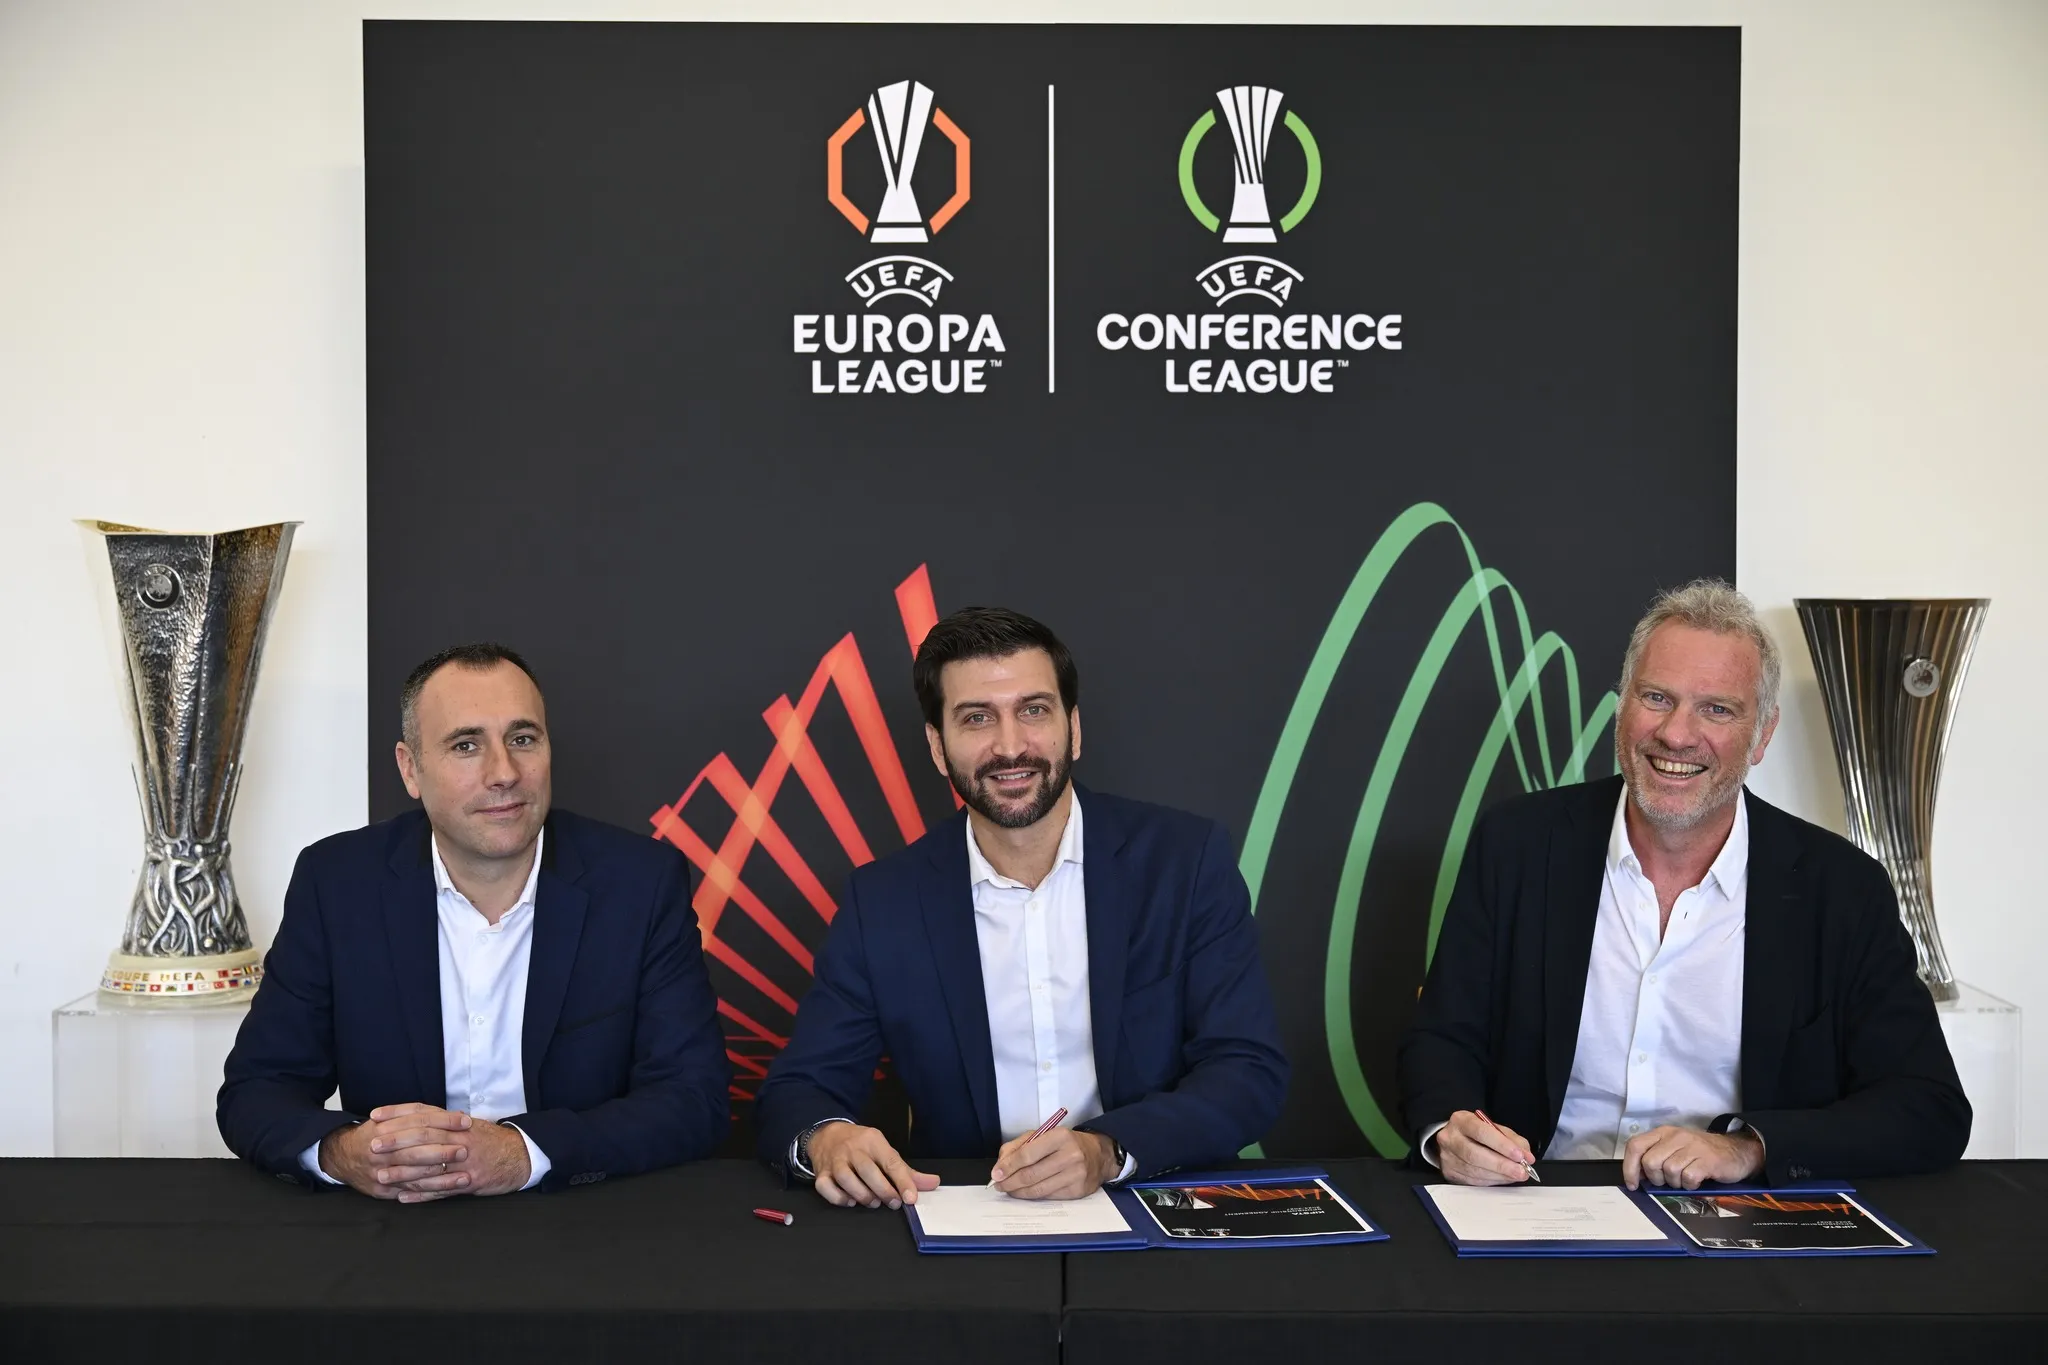 Kipsta nuevo patrocinador de la UEFA